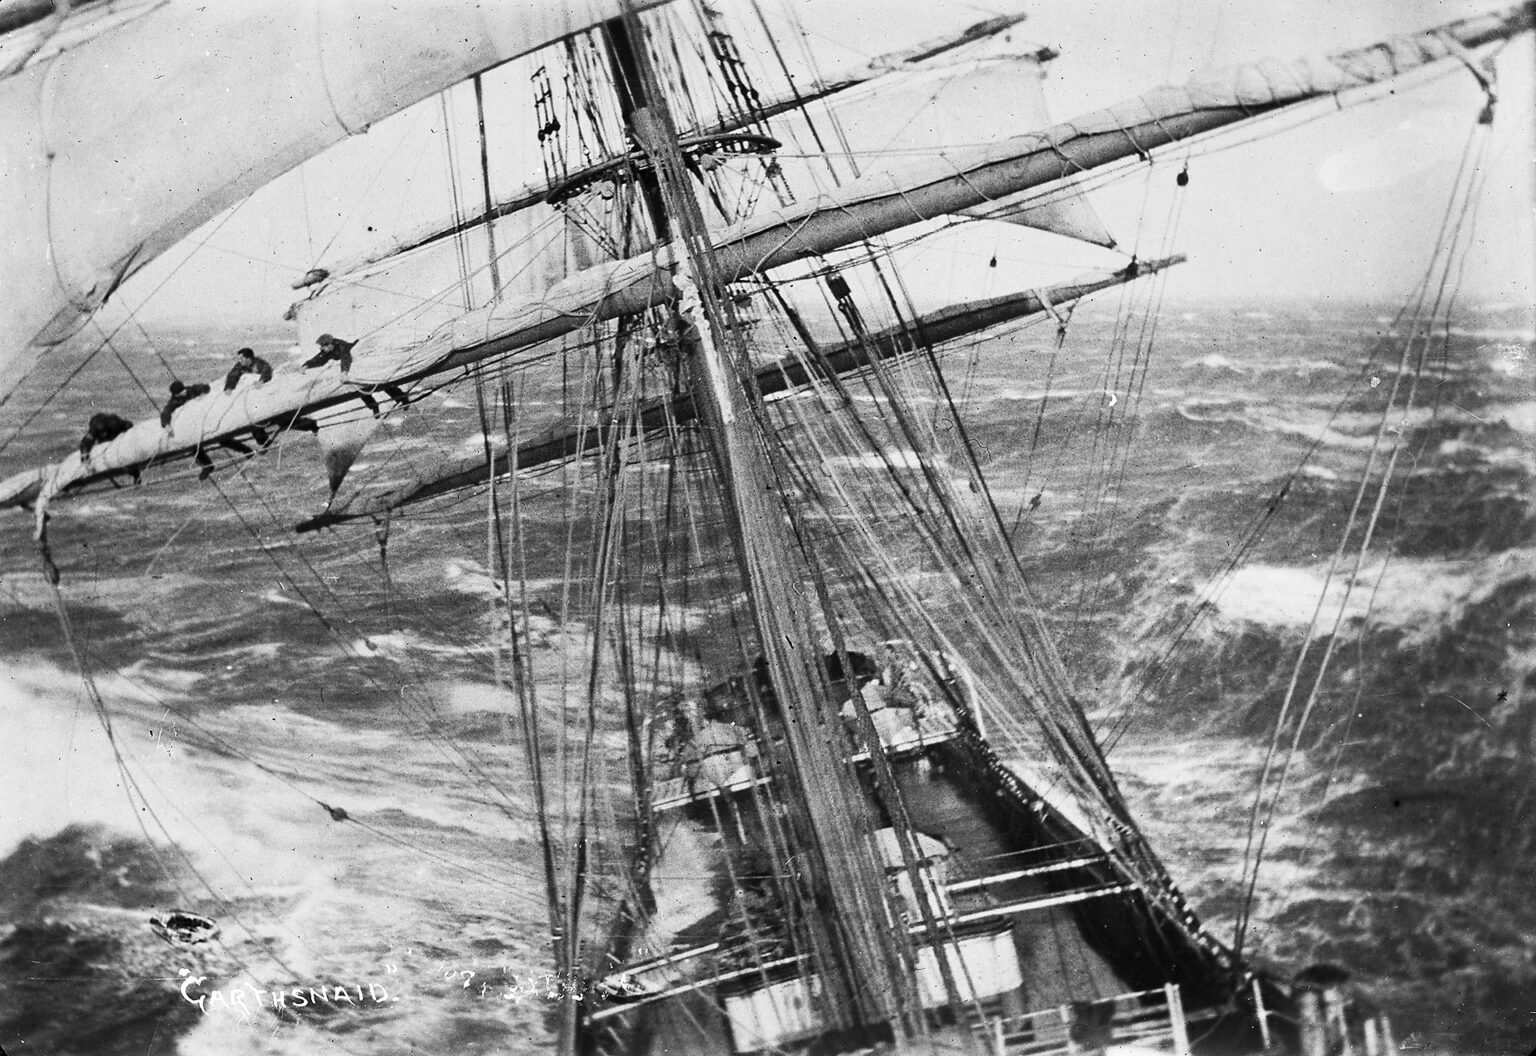 Żaglowiec Garthsnaid w trakcie silnego sztormu w 1920 roku (fot. Alexander Harper)